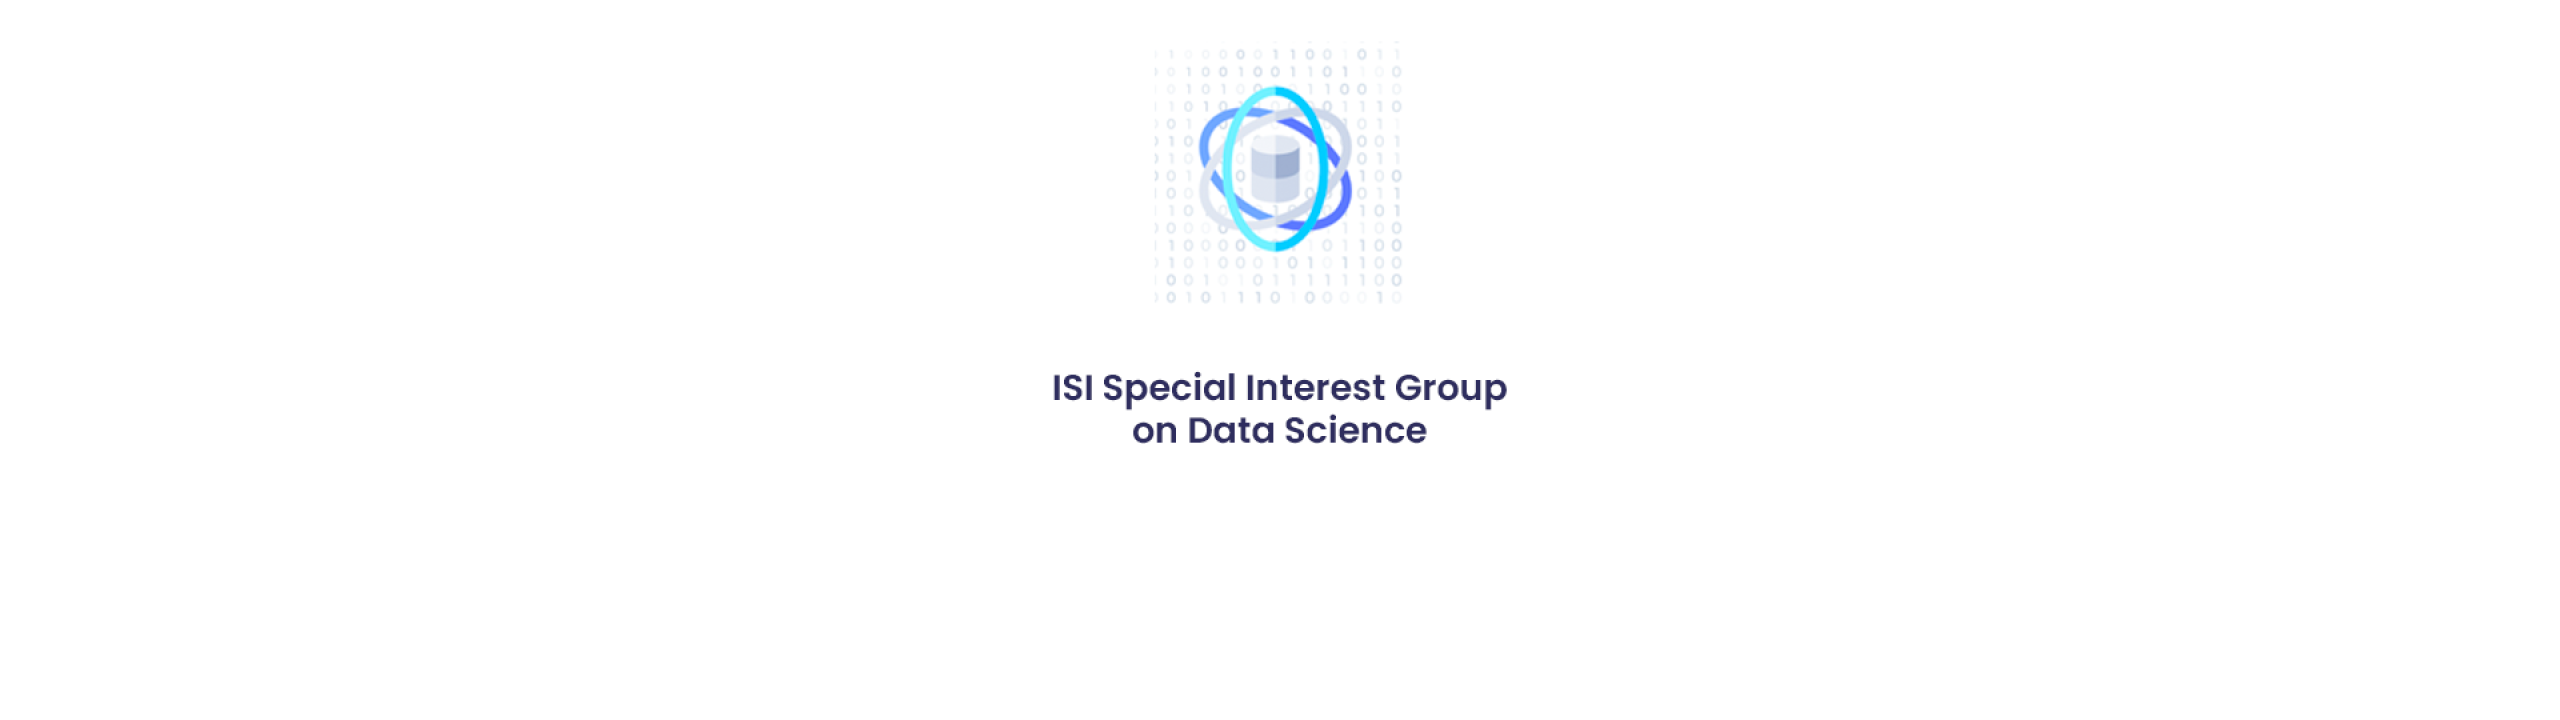 sig-data-science-header